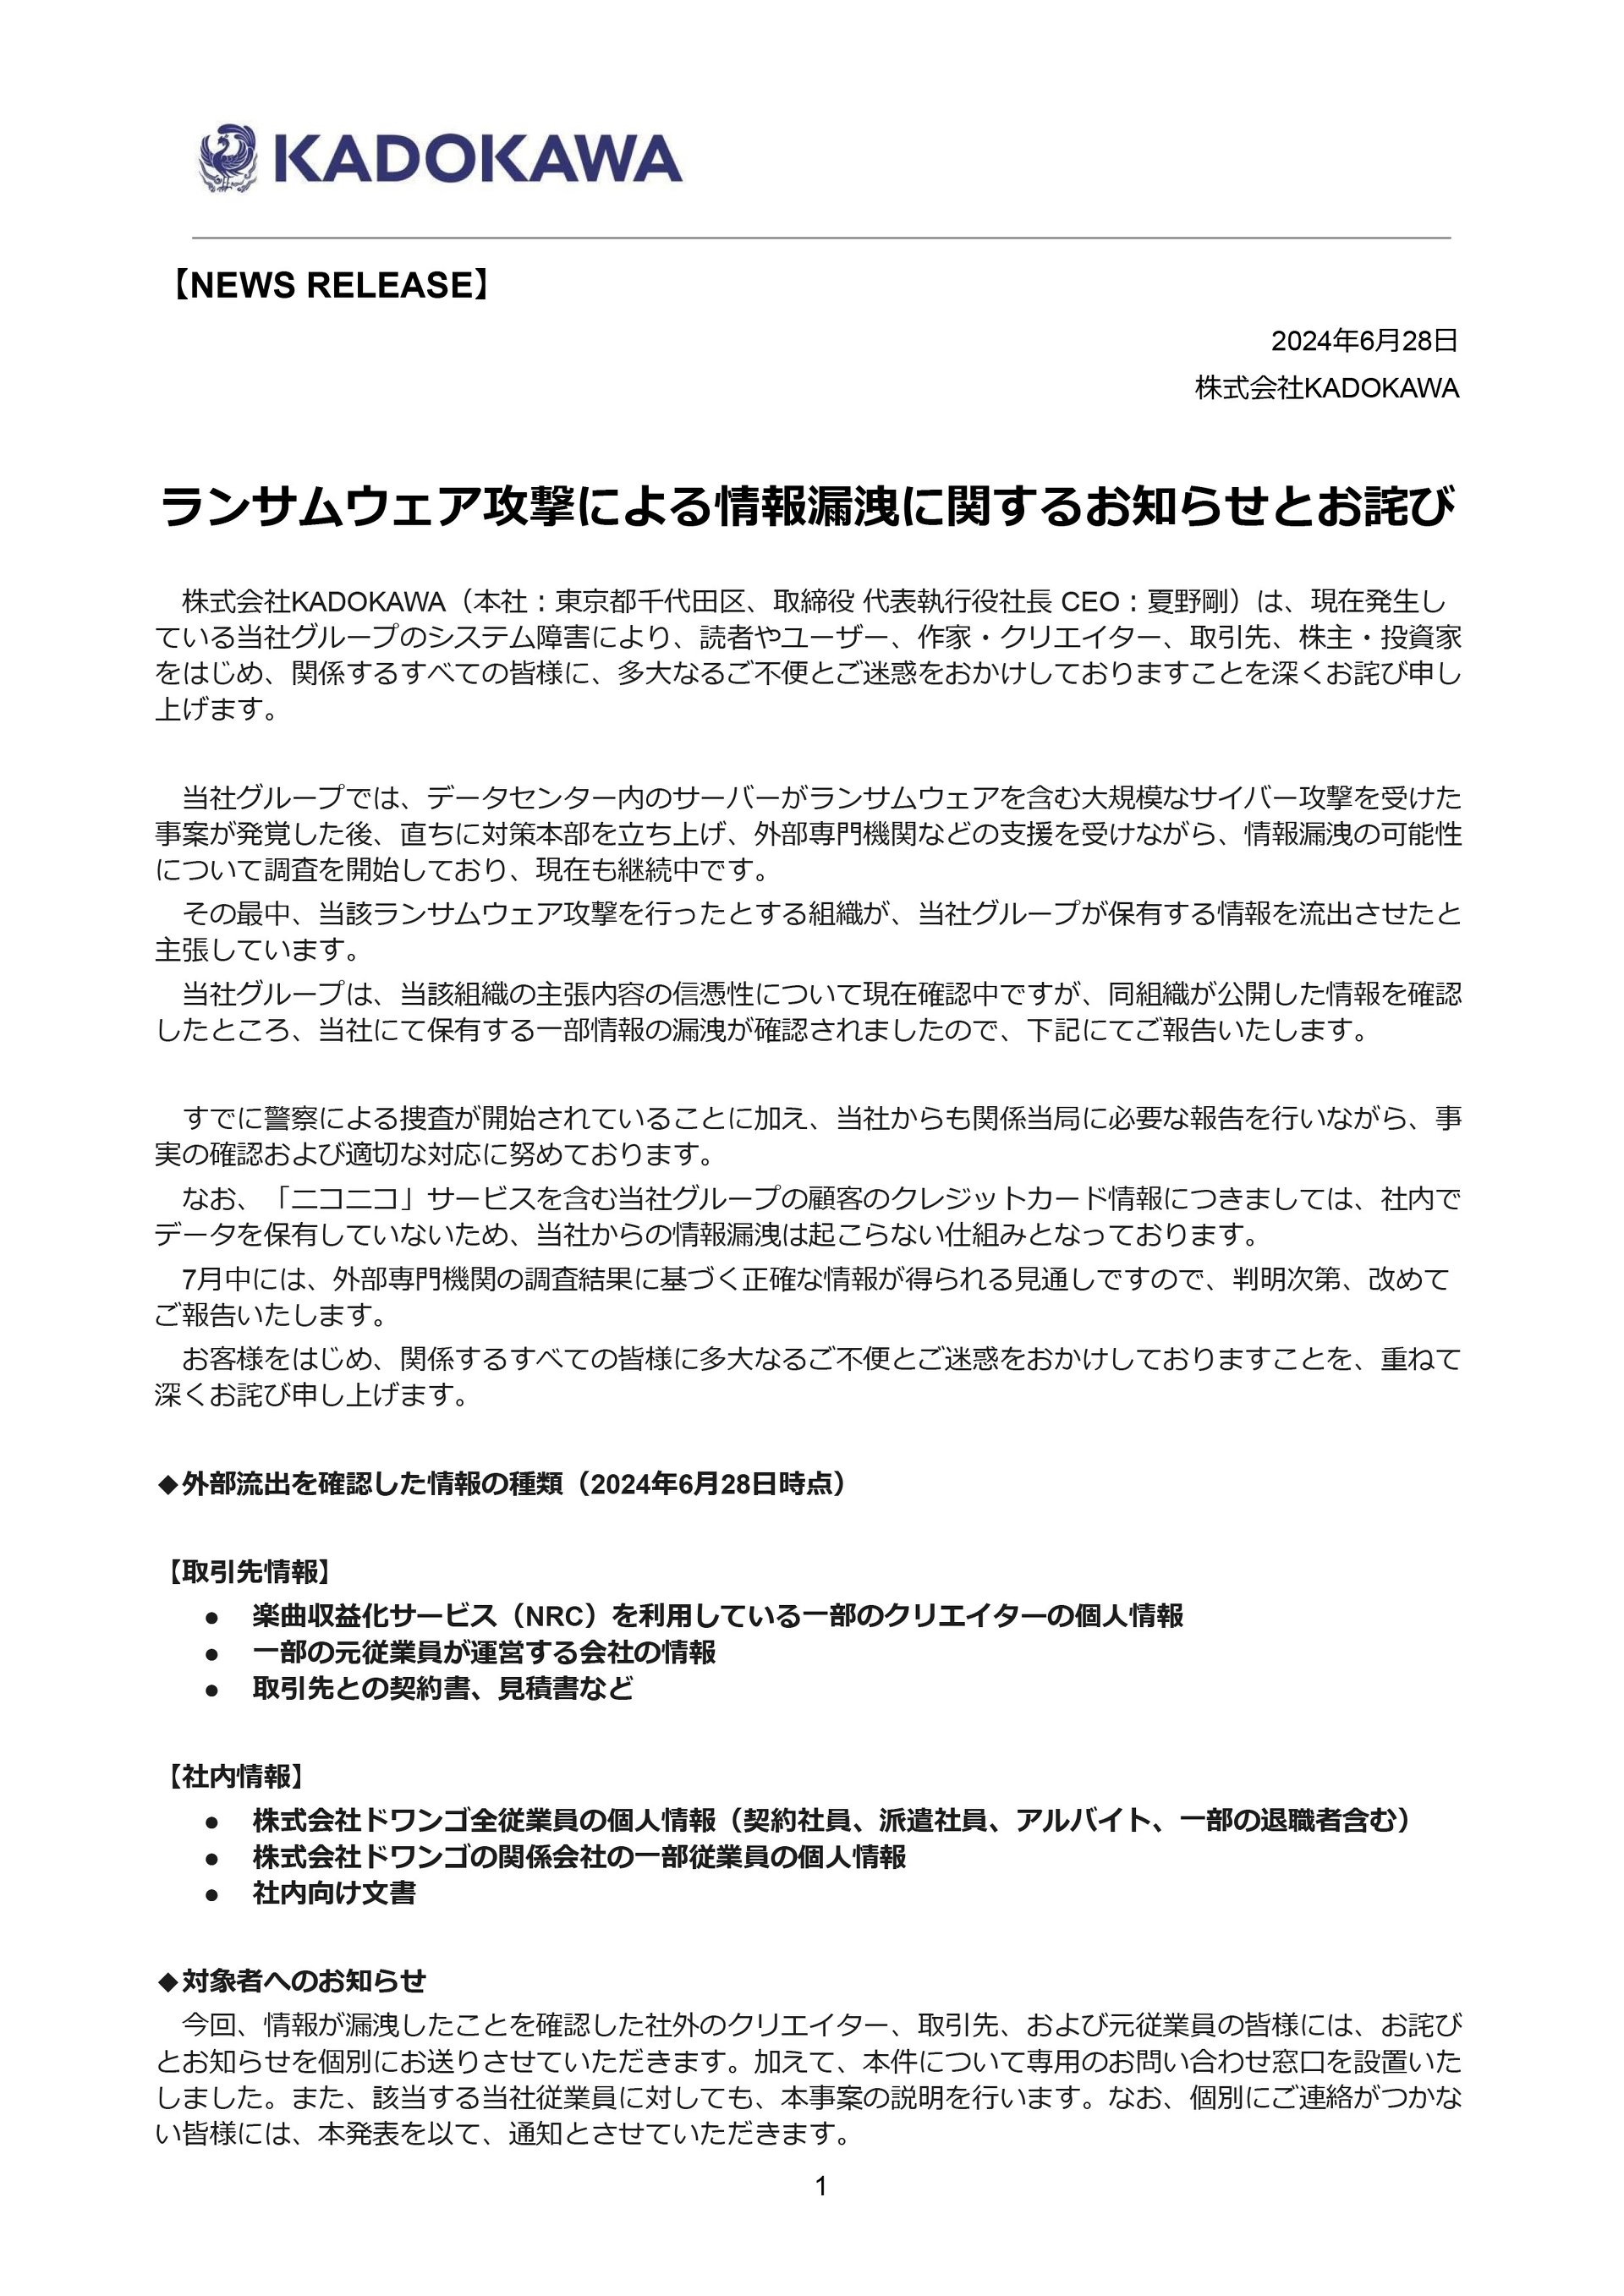 KADOKAWA、クリエイターの個人情報漏えいを確認　取引先との契約書なども